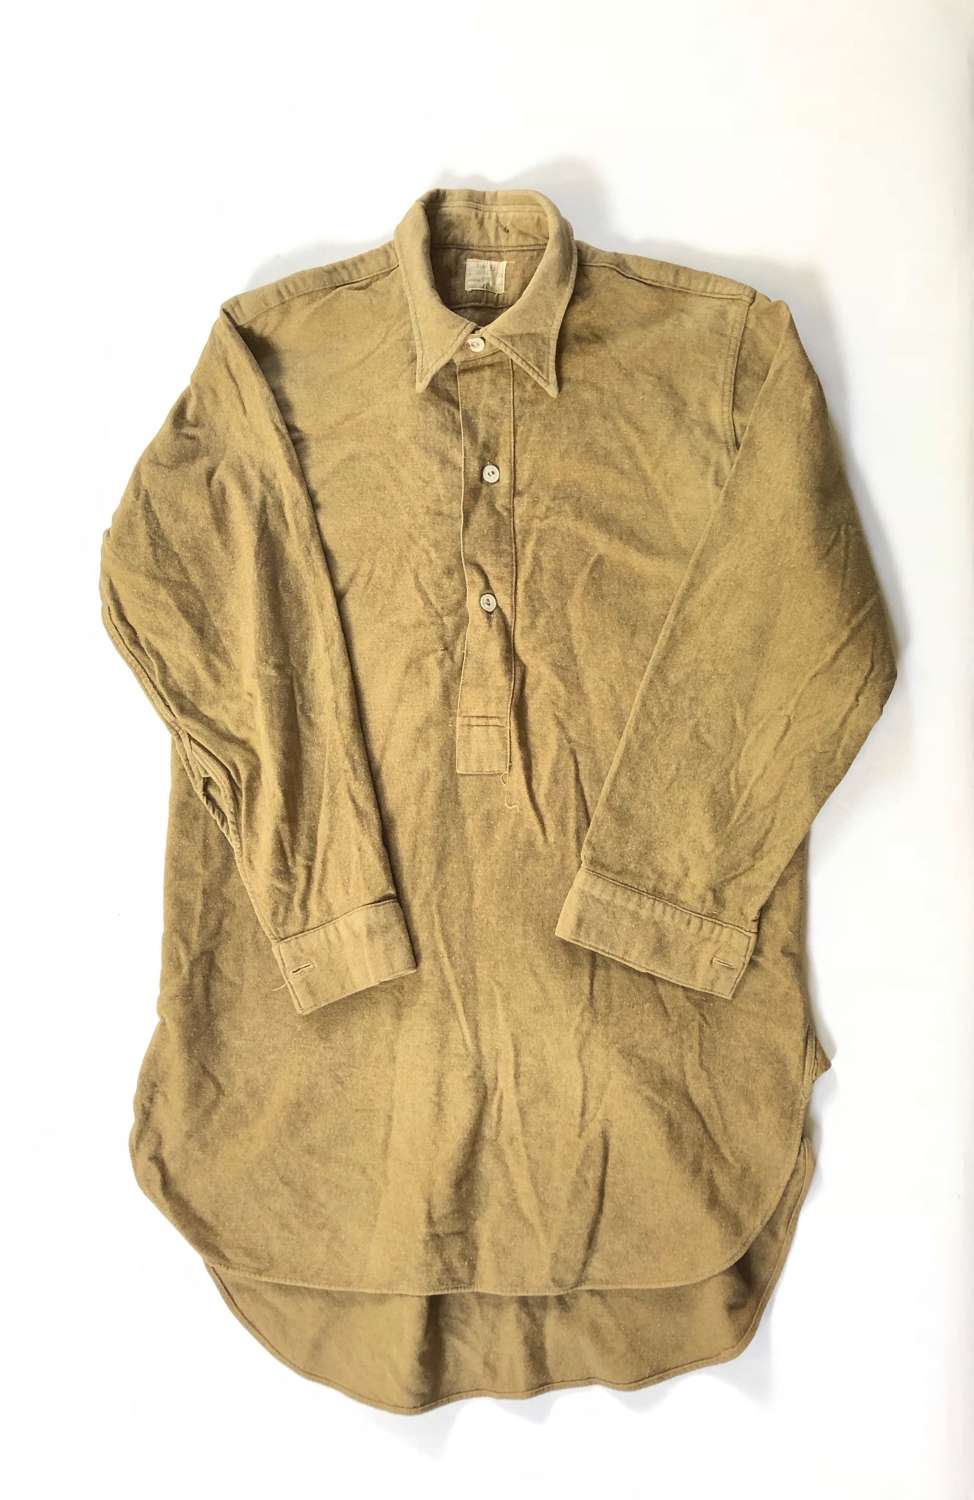 WW2 1945 British Army Issue Wool Shirt.